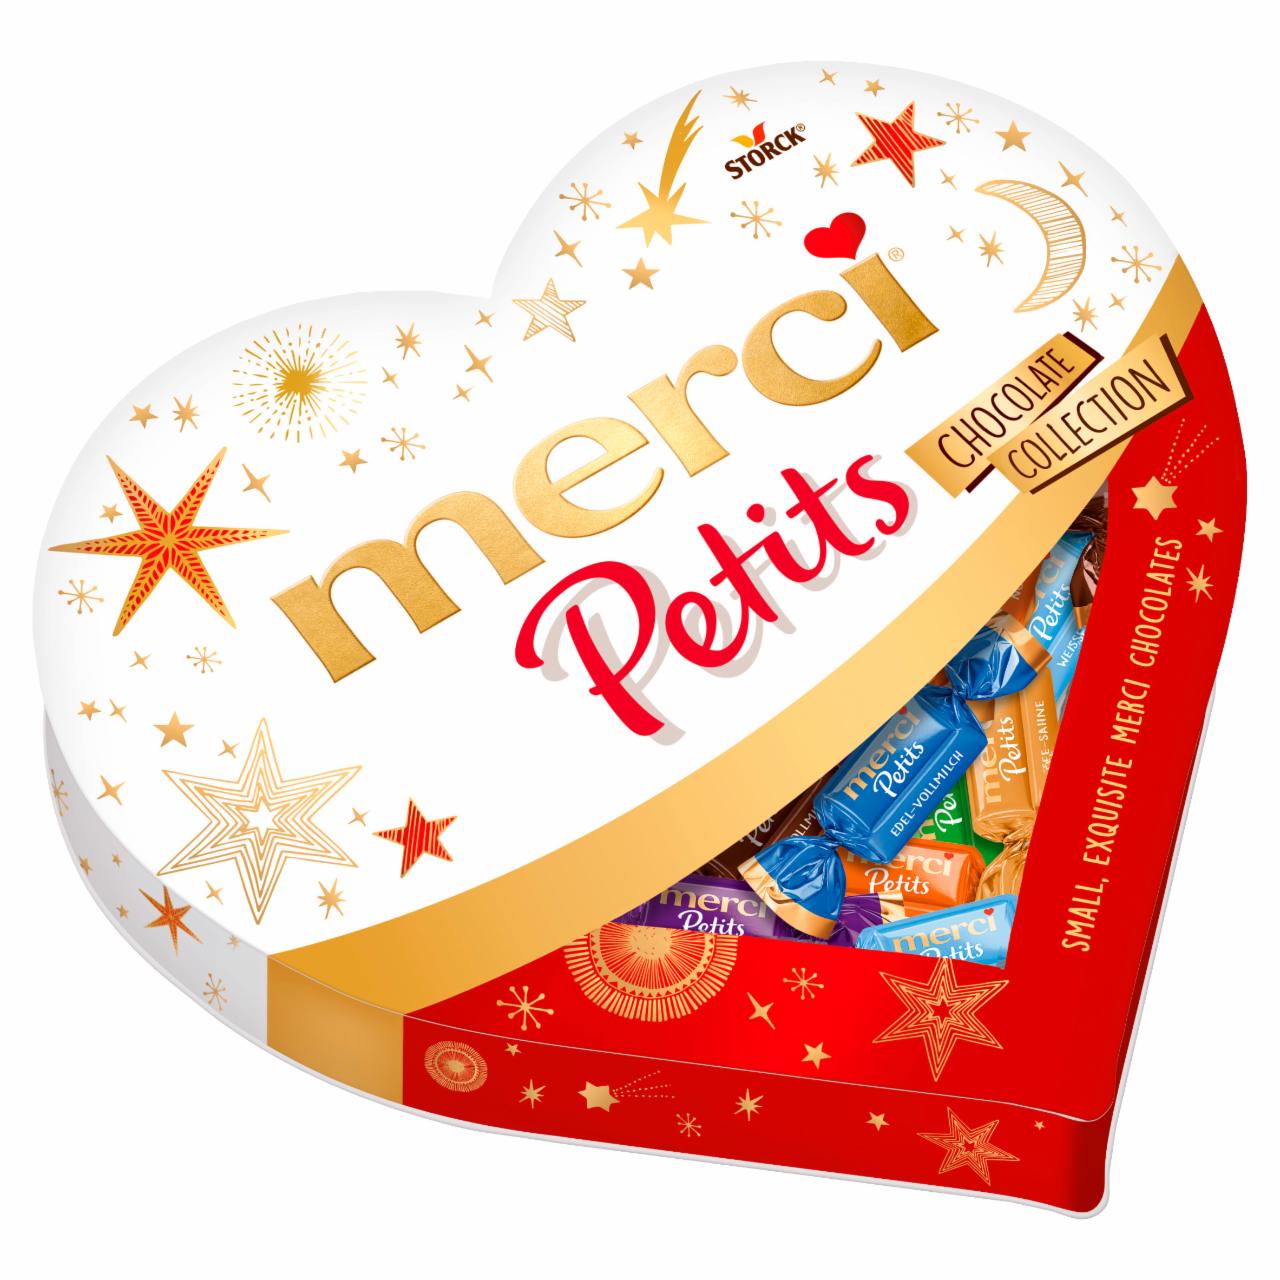 Képek - Merci Petits Szív 7 csokoládékülönlegesség 250 g